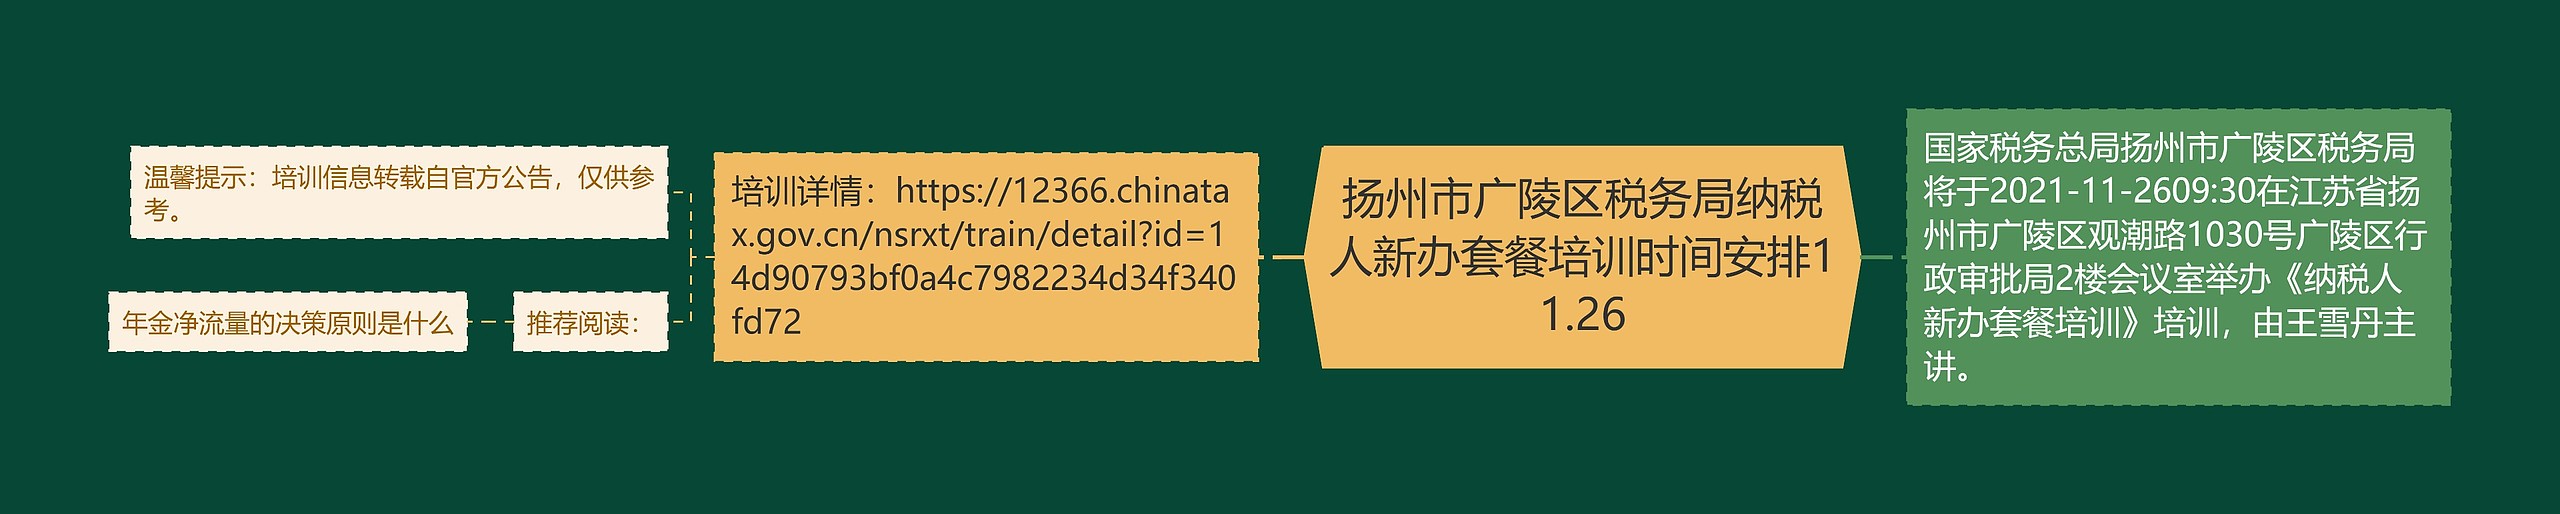 扬州市广陵区税务局纳税人新办套餐培训时间安排11.26思维导图